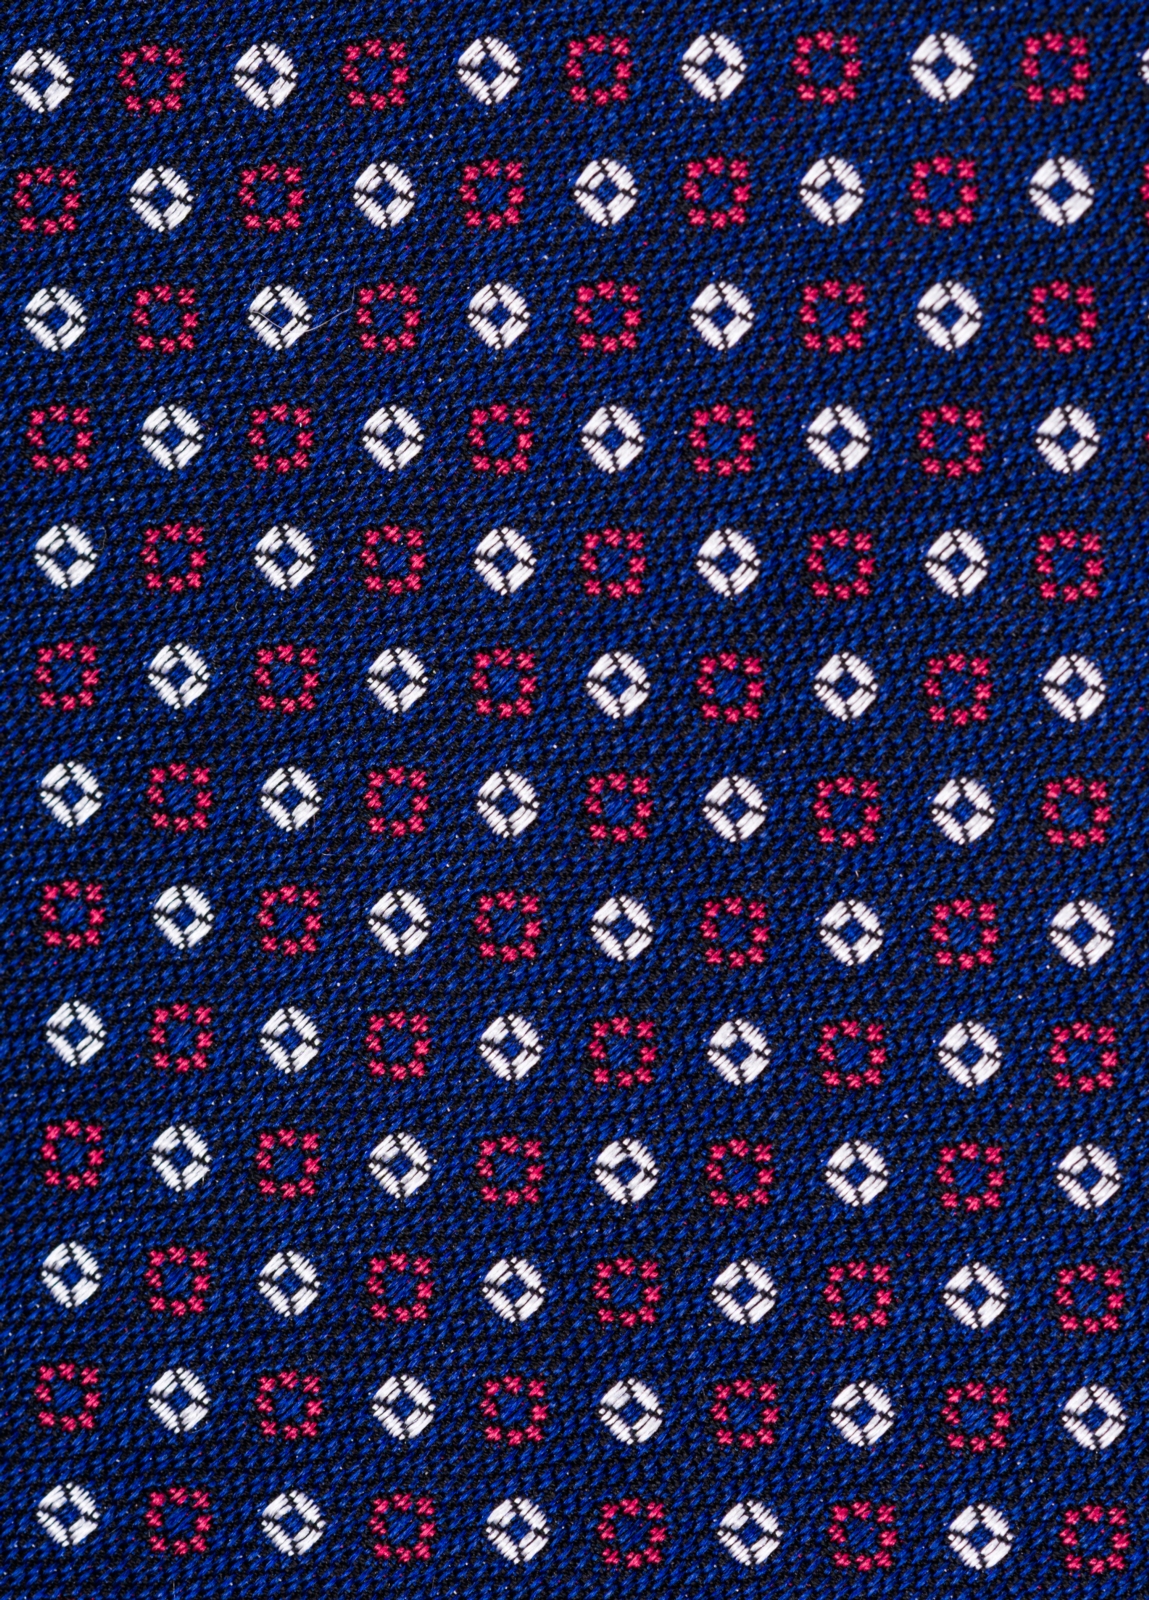 Corbata FUREST COLECCIÓN color azul con dibujo geométrico blanco y rojo - Ítem2